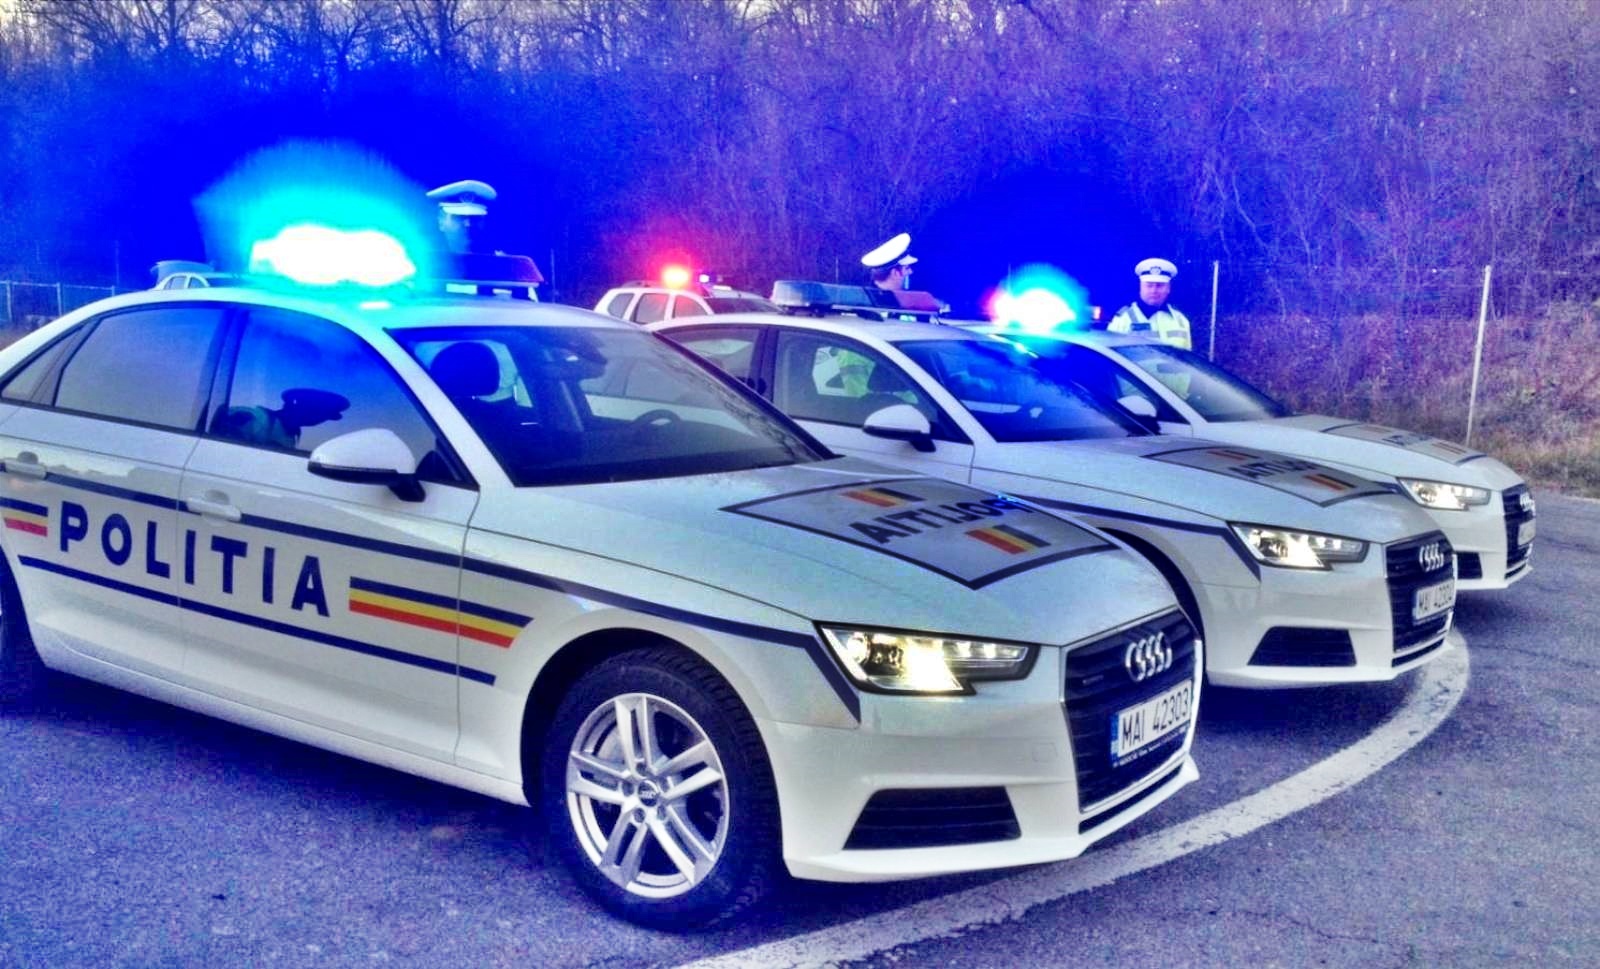 Rumuński samochód policyjny jadący z prędkością 253 km h. Przechwycony radarem